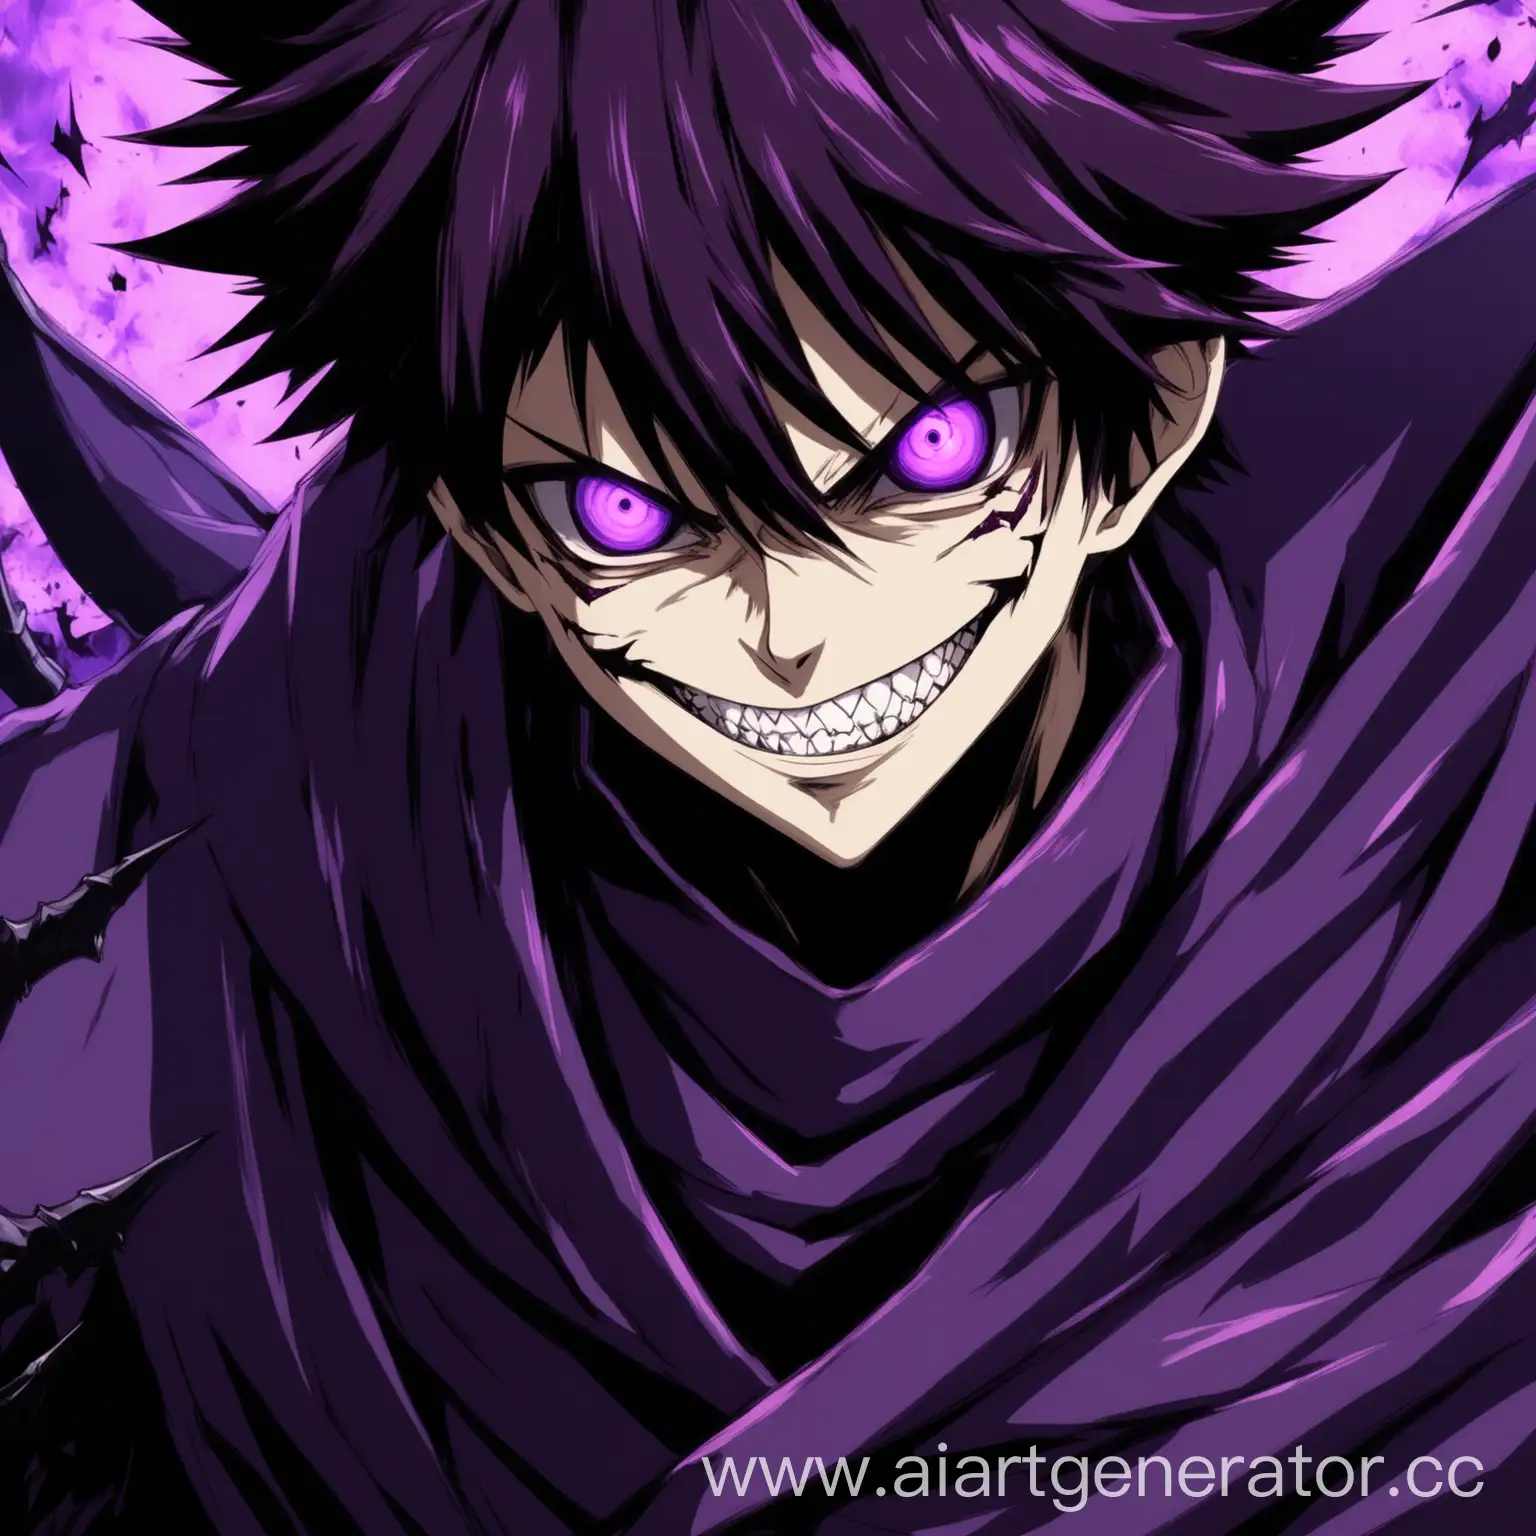 Malicious-Anime-Boy-in-Purple-Attire